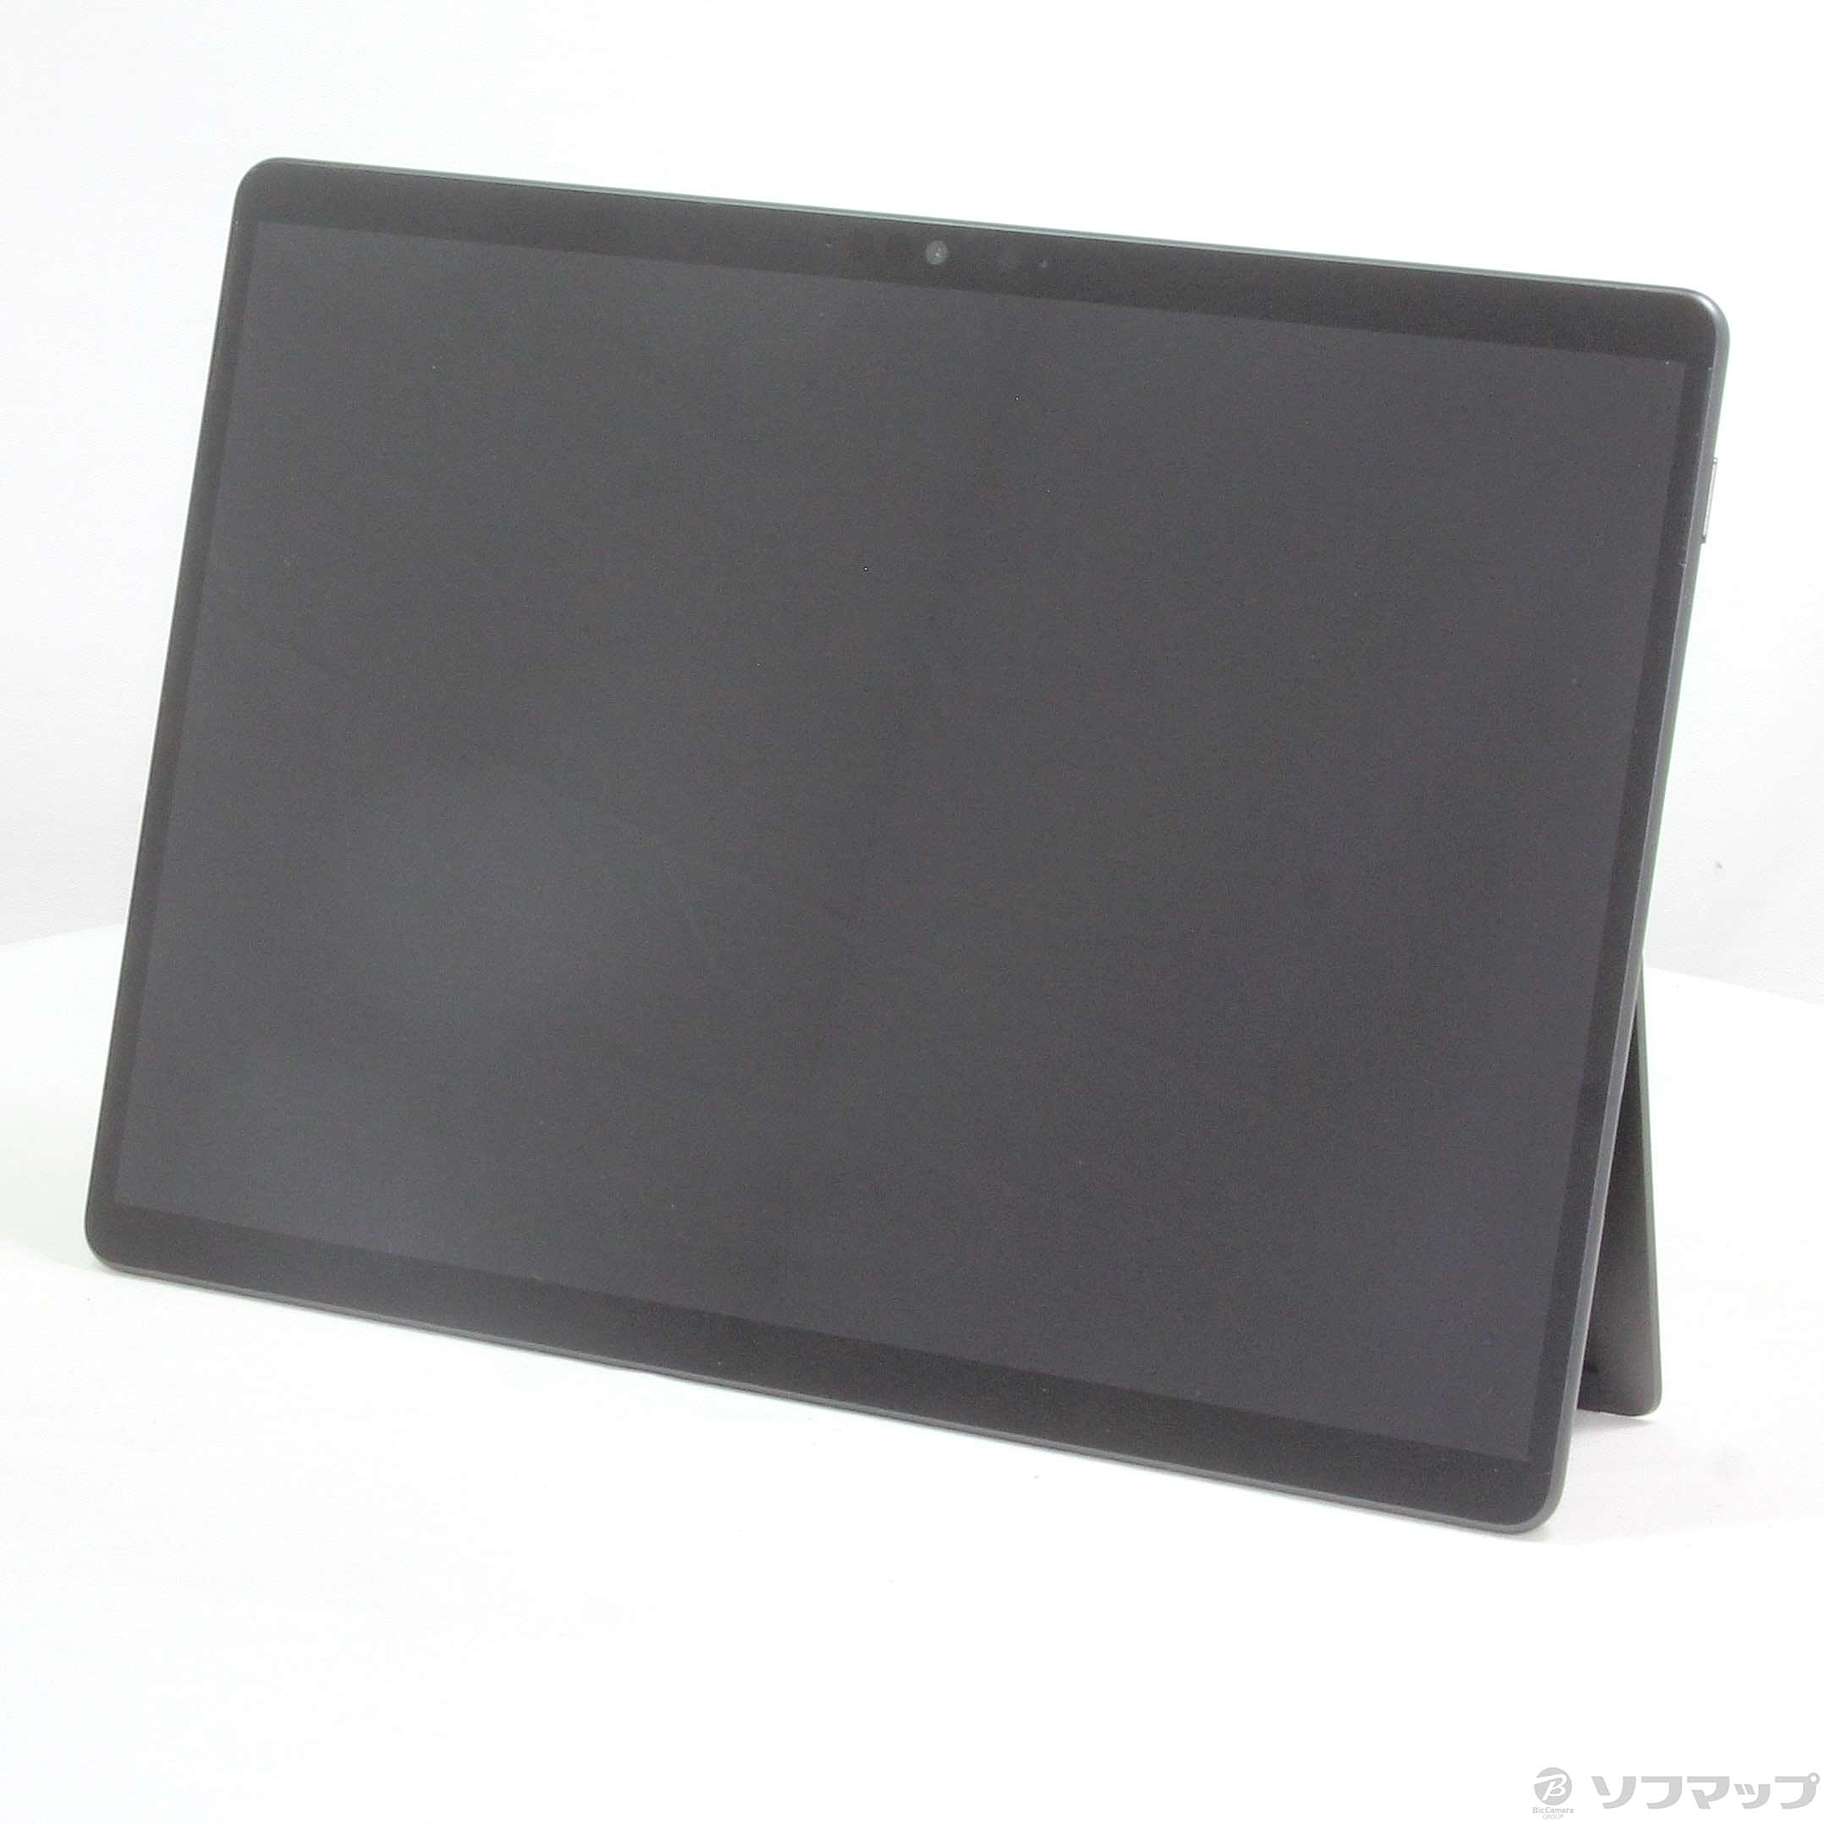 中古品Surface Pro8[Core i5/8GB/SSD256GB]8PQ-00026|no邮购是Sofmap